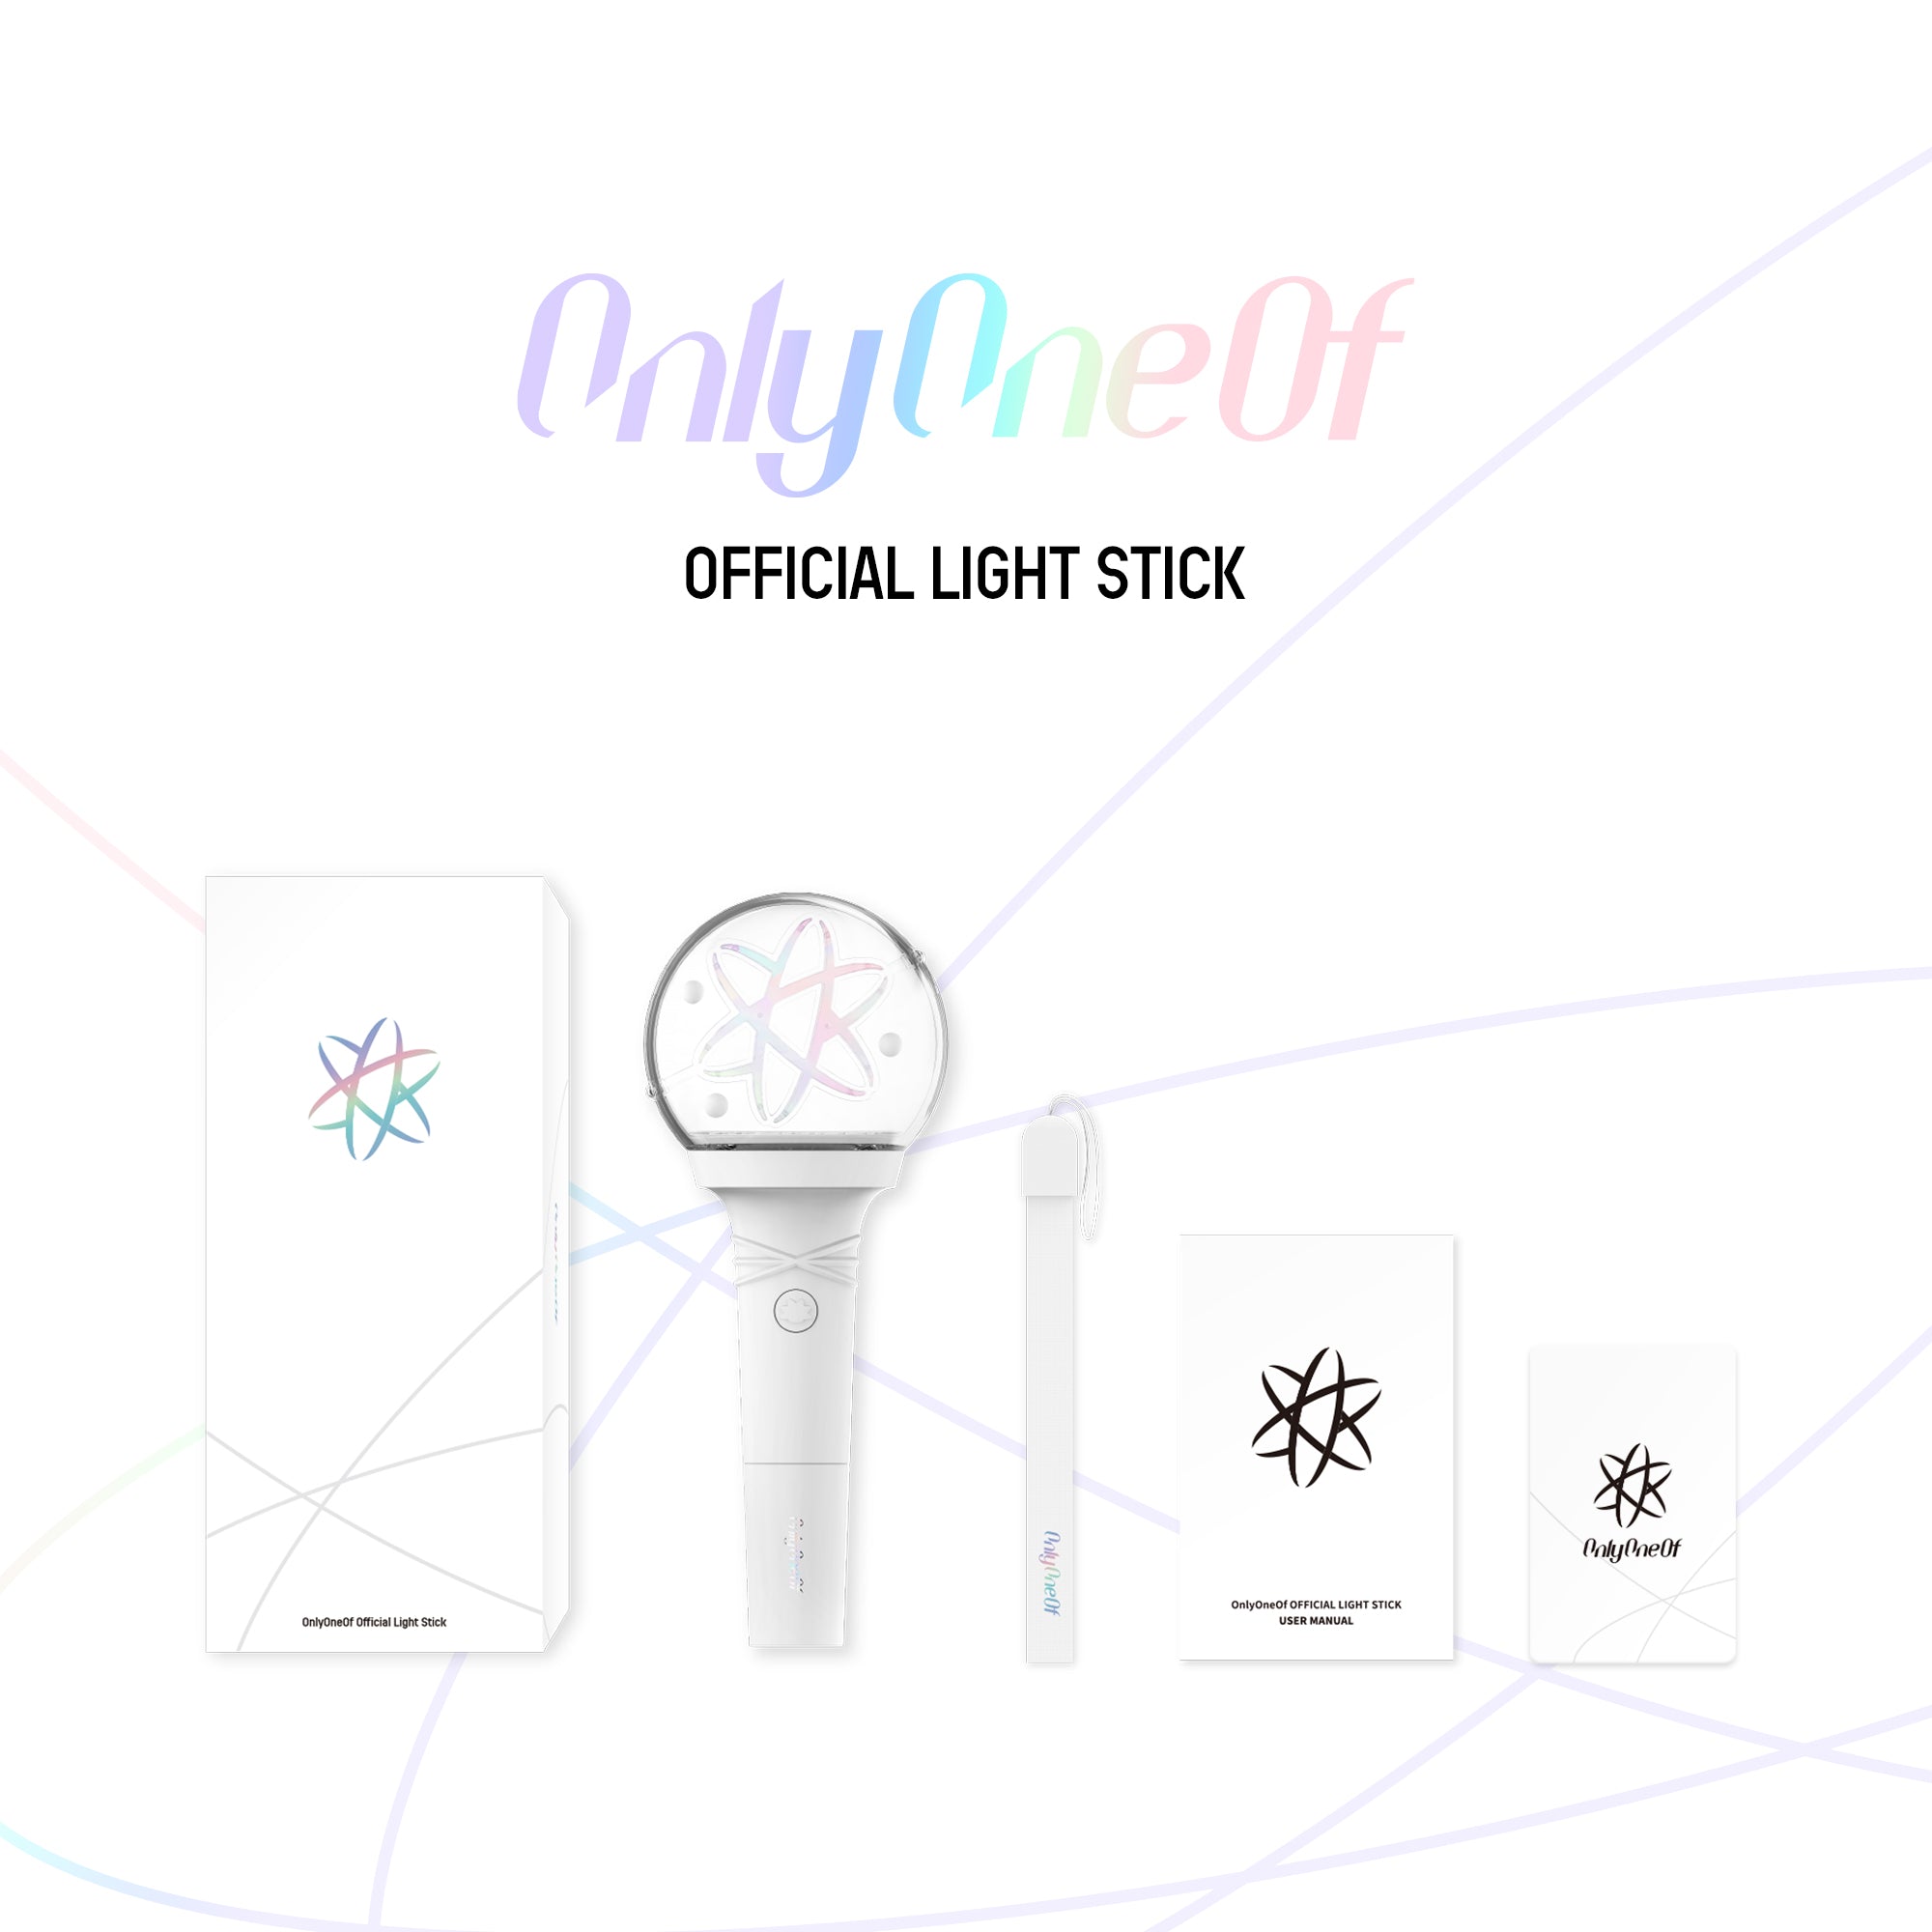 OnlyOneOf - OFFICIAL LIGHT STICK